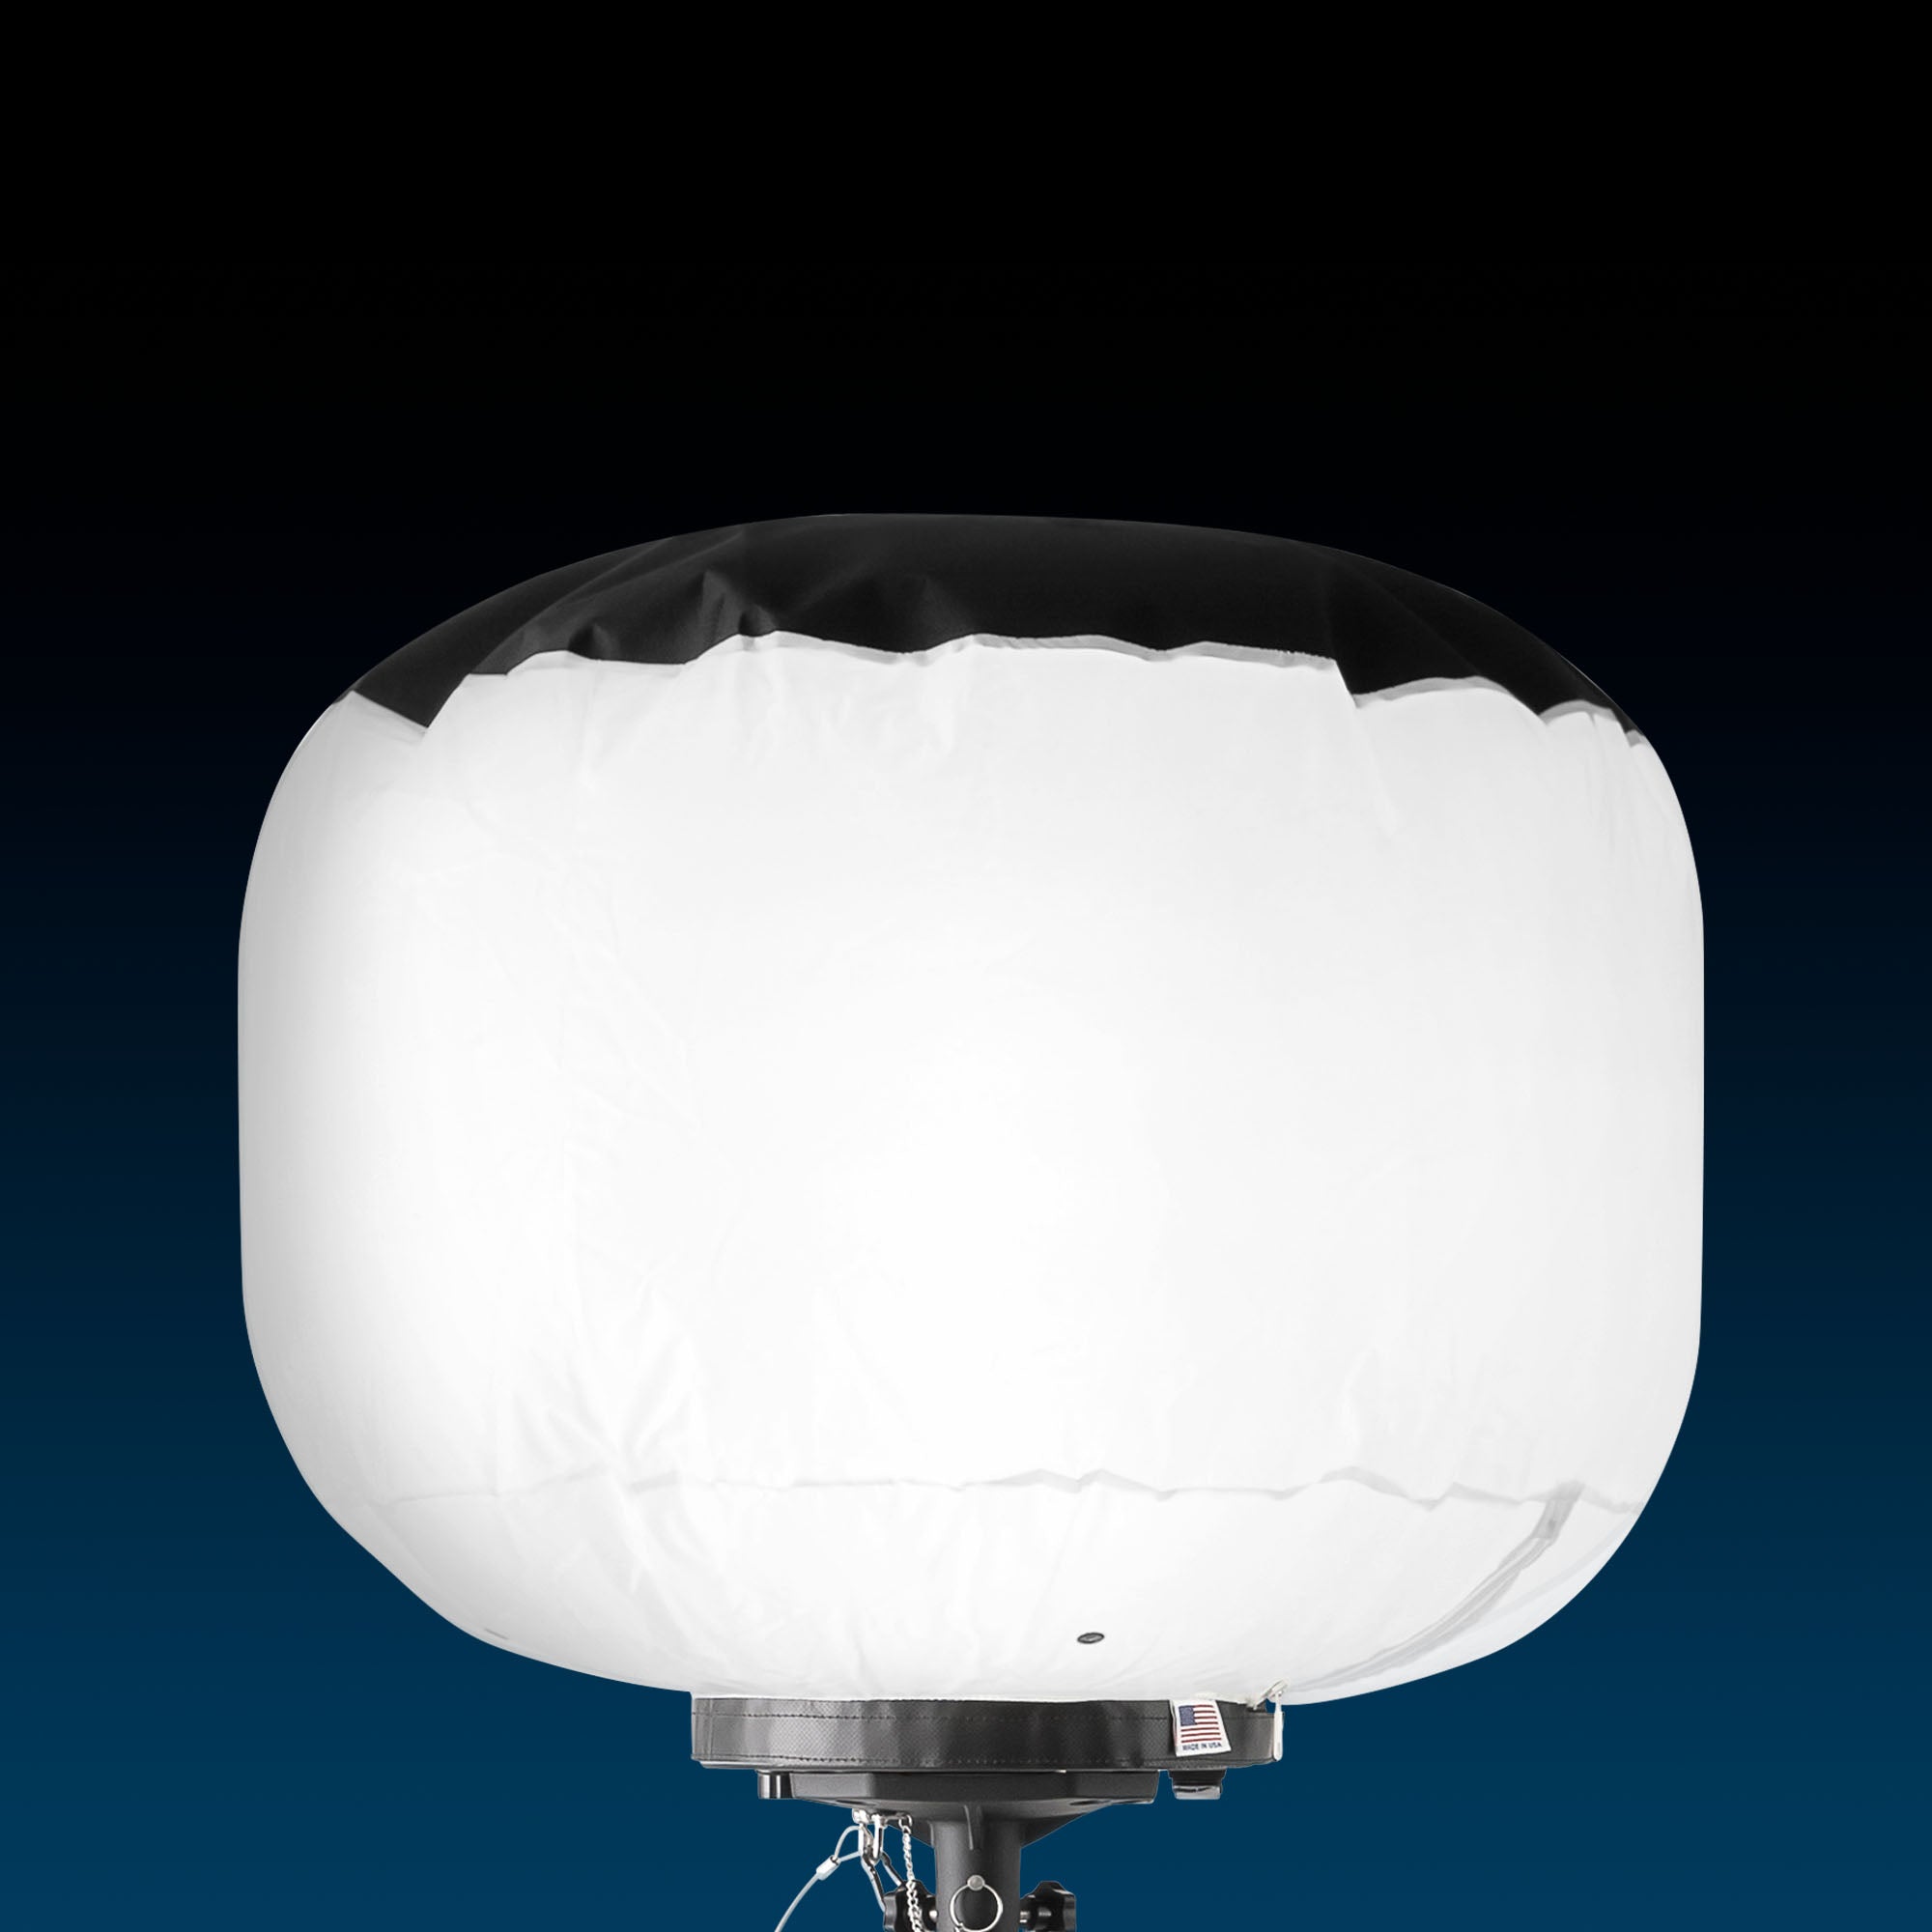 SKYFUZE™ 300W LED Balloon Light Kit